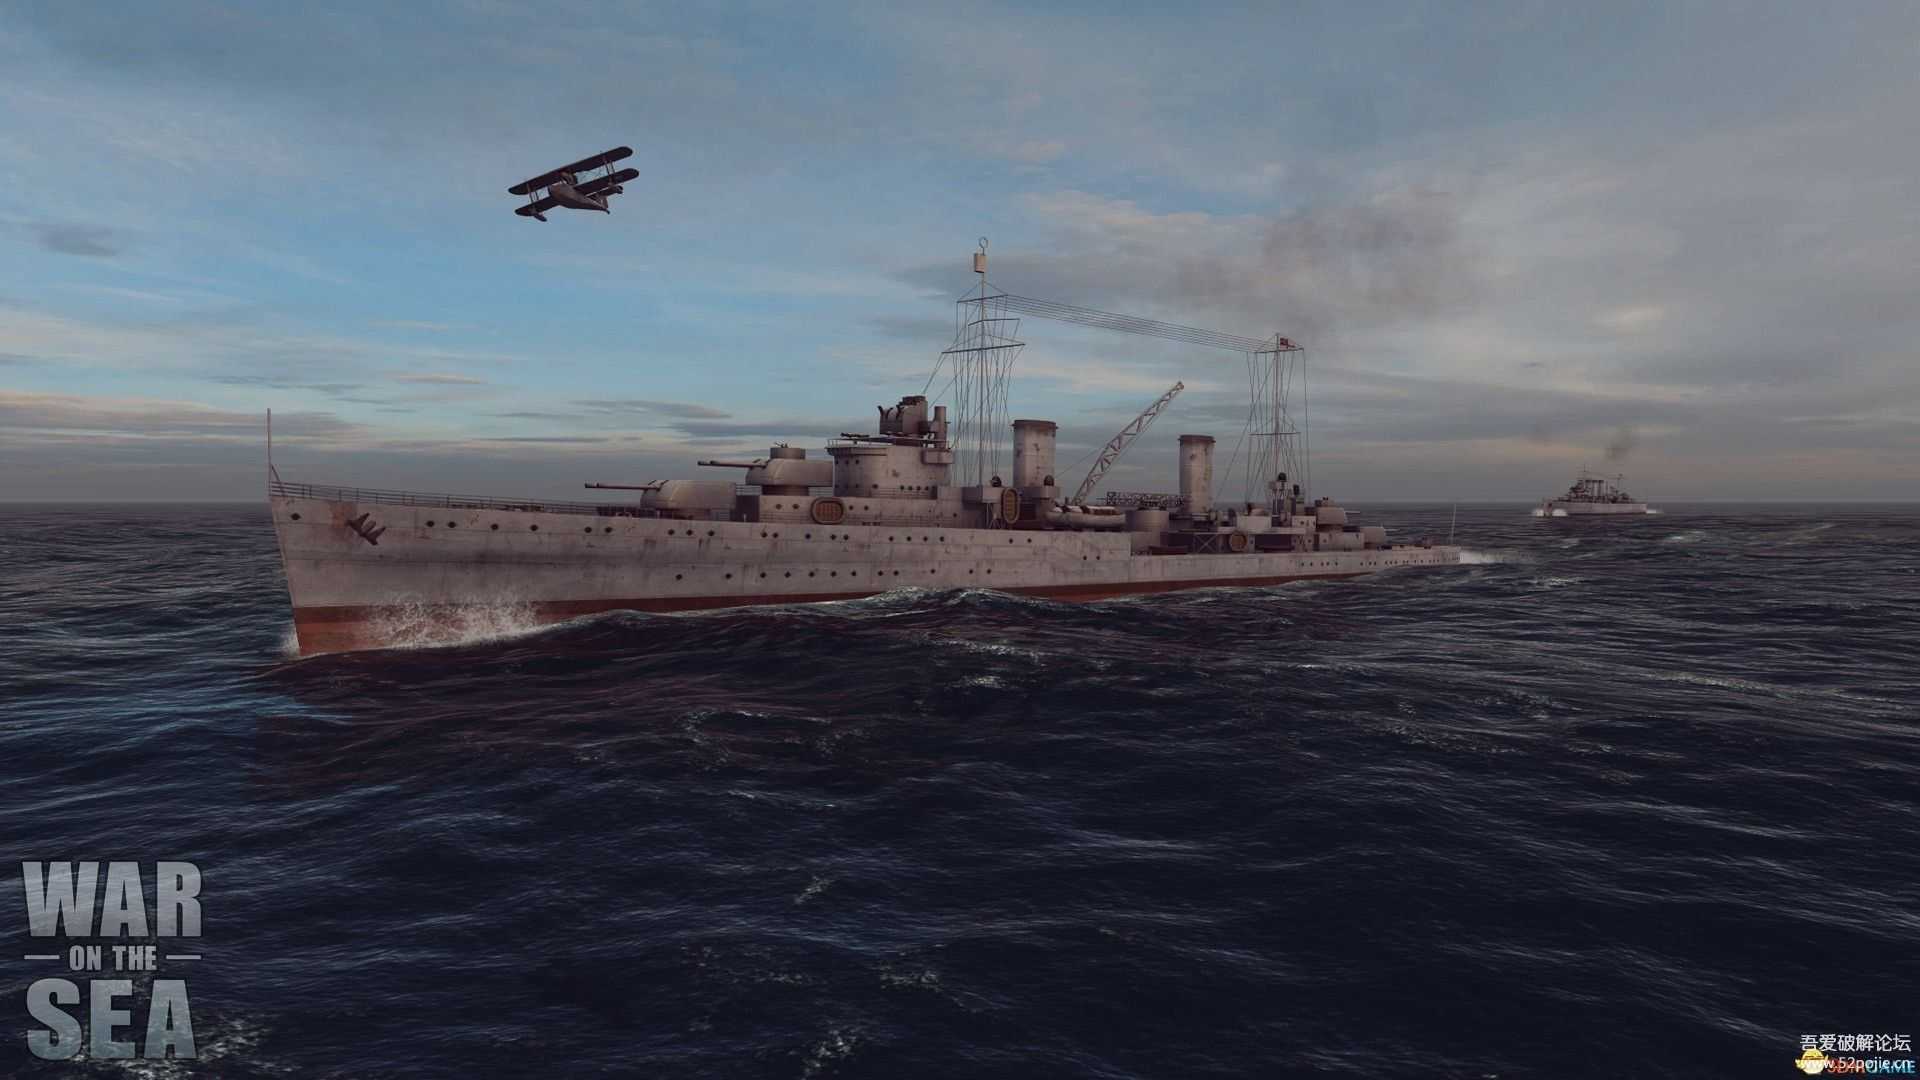 【海战游戏】海上战争 《War on the Sea》 v1.08D5H1 部分汉化版